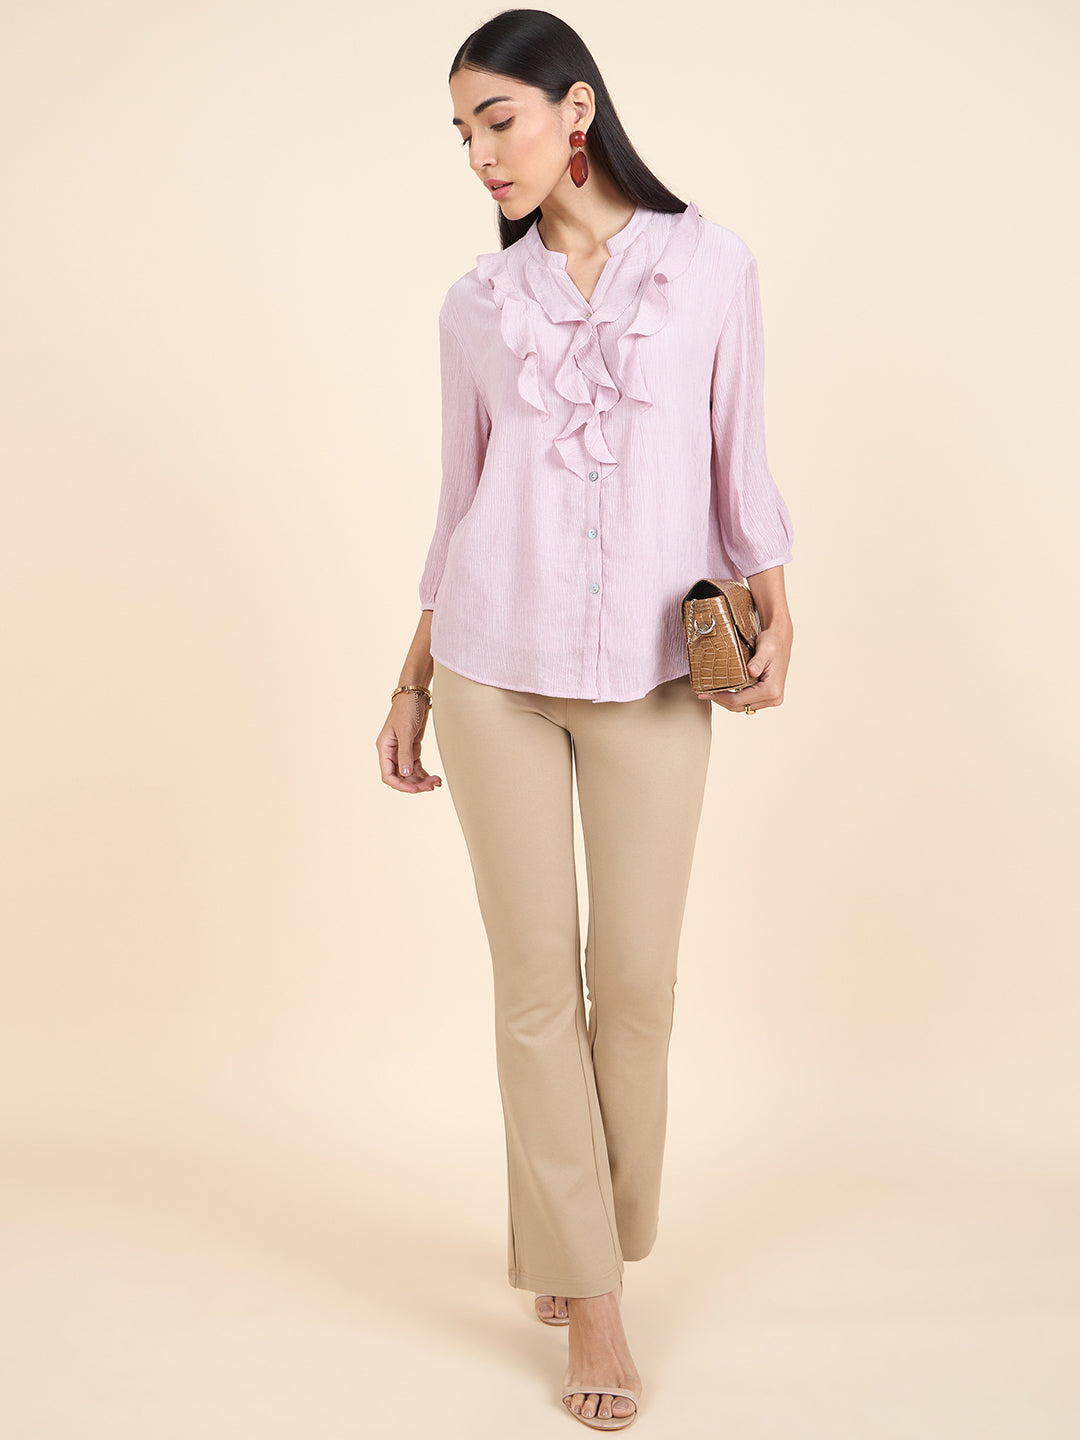 Gipsy Stylish Women Tunics Collection Pink